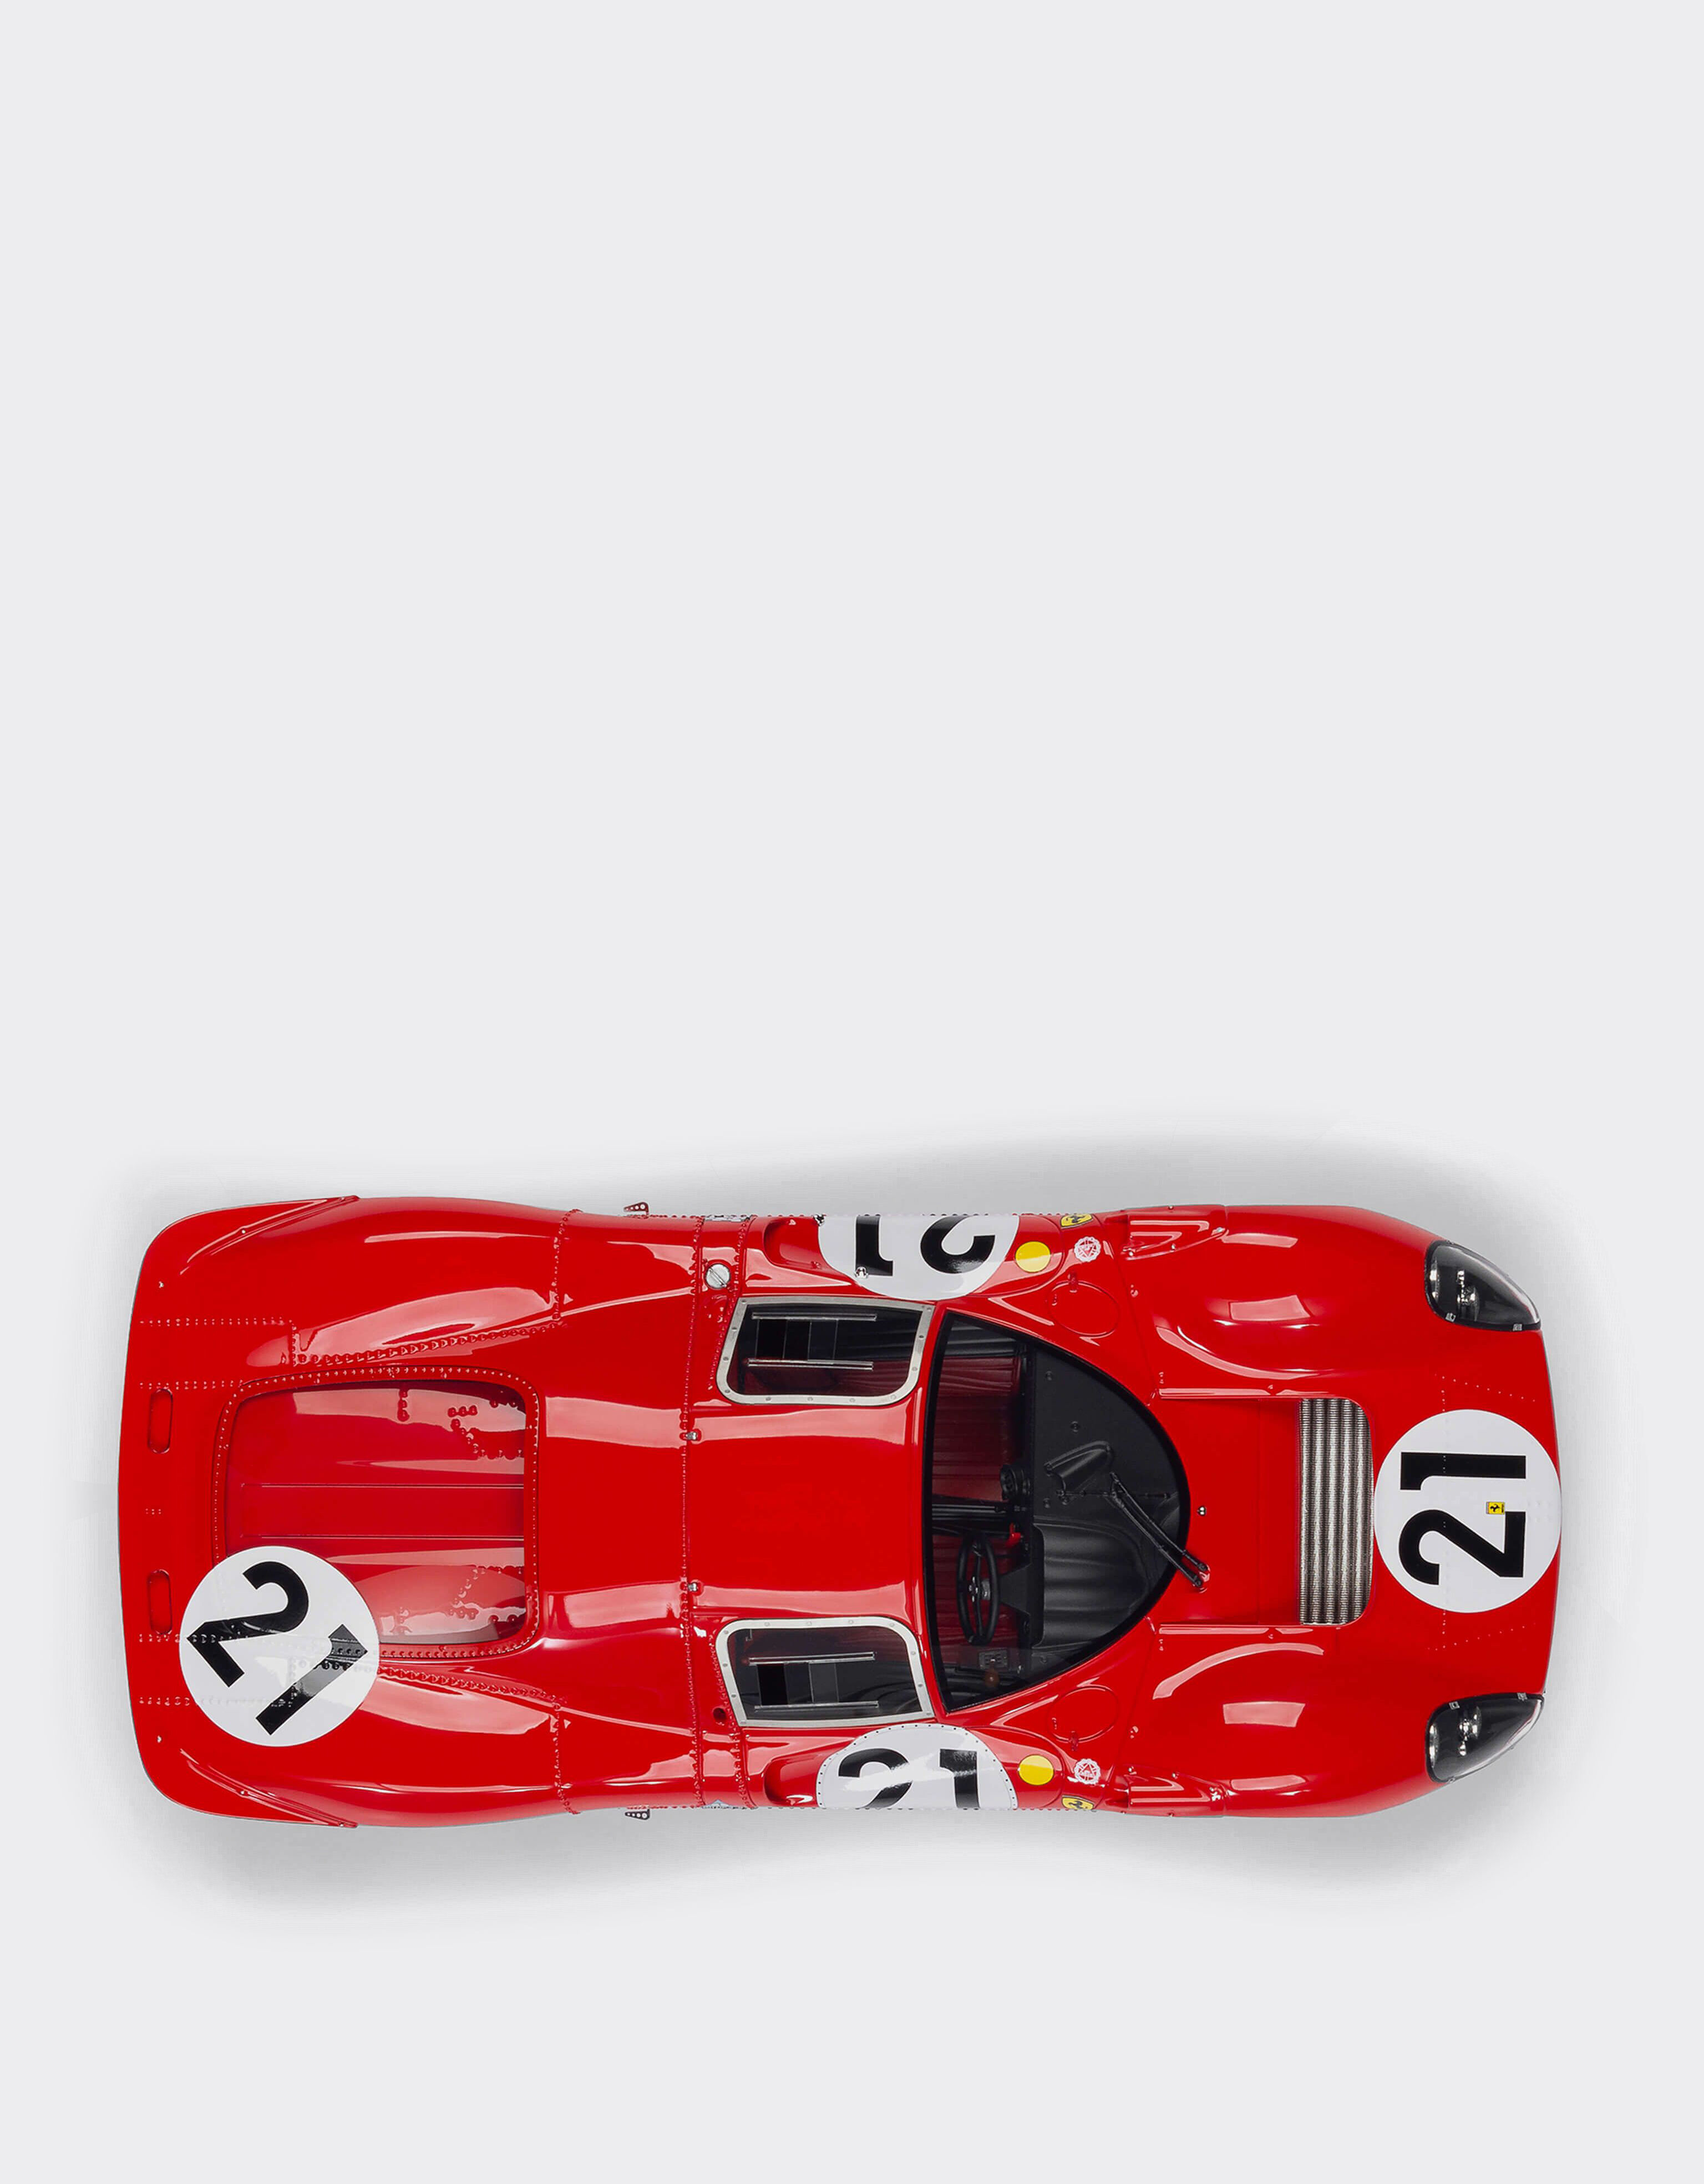 Ferrari Ferrari 330 P4 model in 1:18 scale Red L7588f